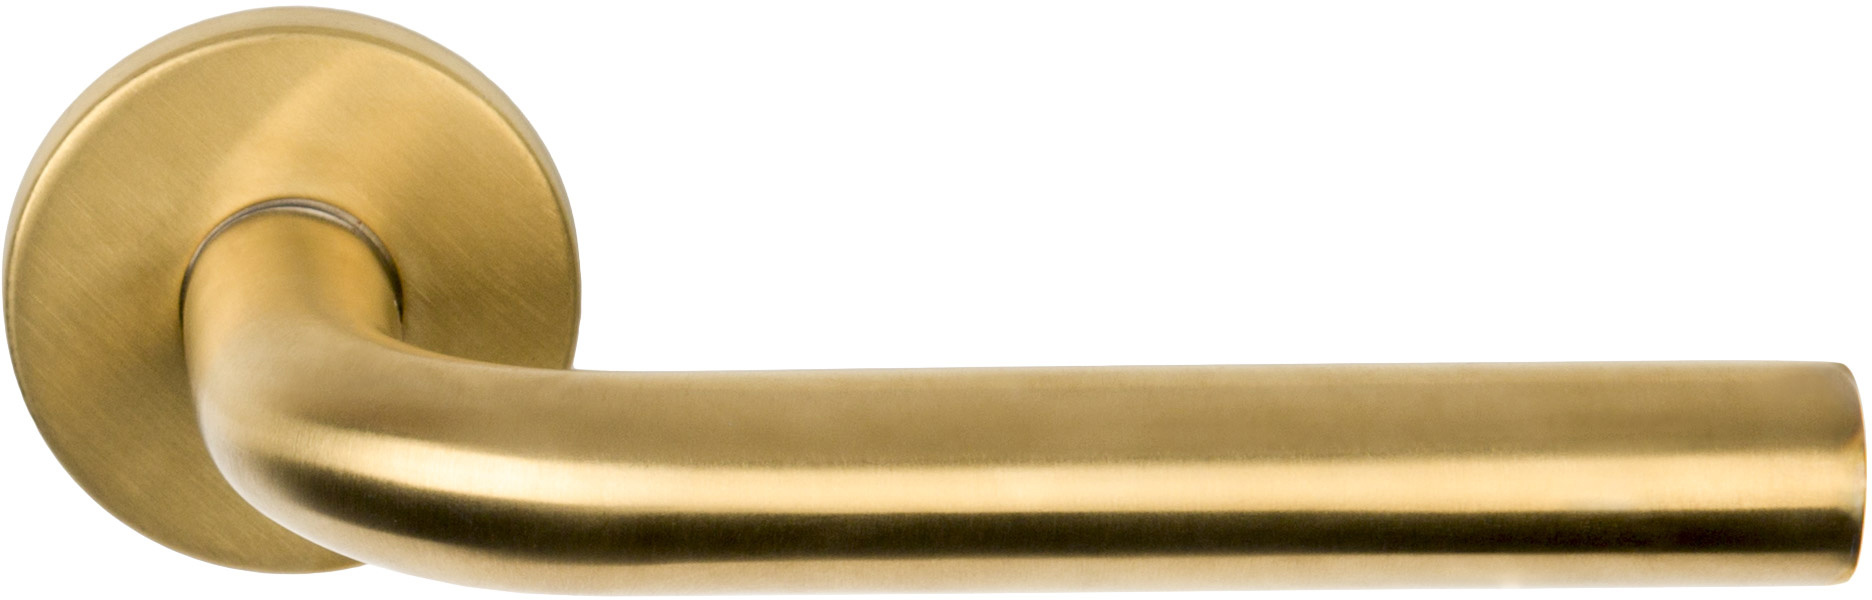 Entdecken Sie hier Design-Türdrücker aus der Basic-Serie von Formani matt  Gold